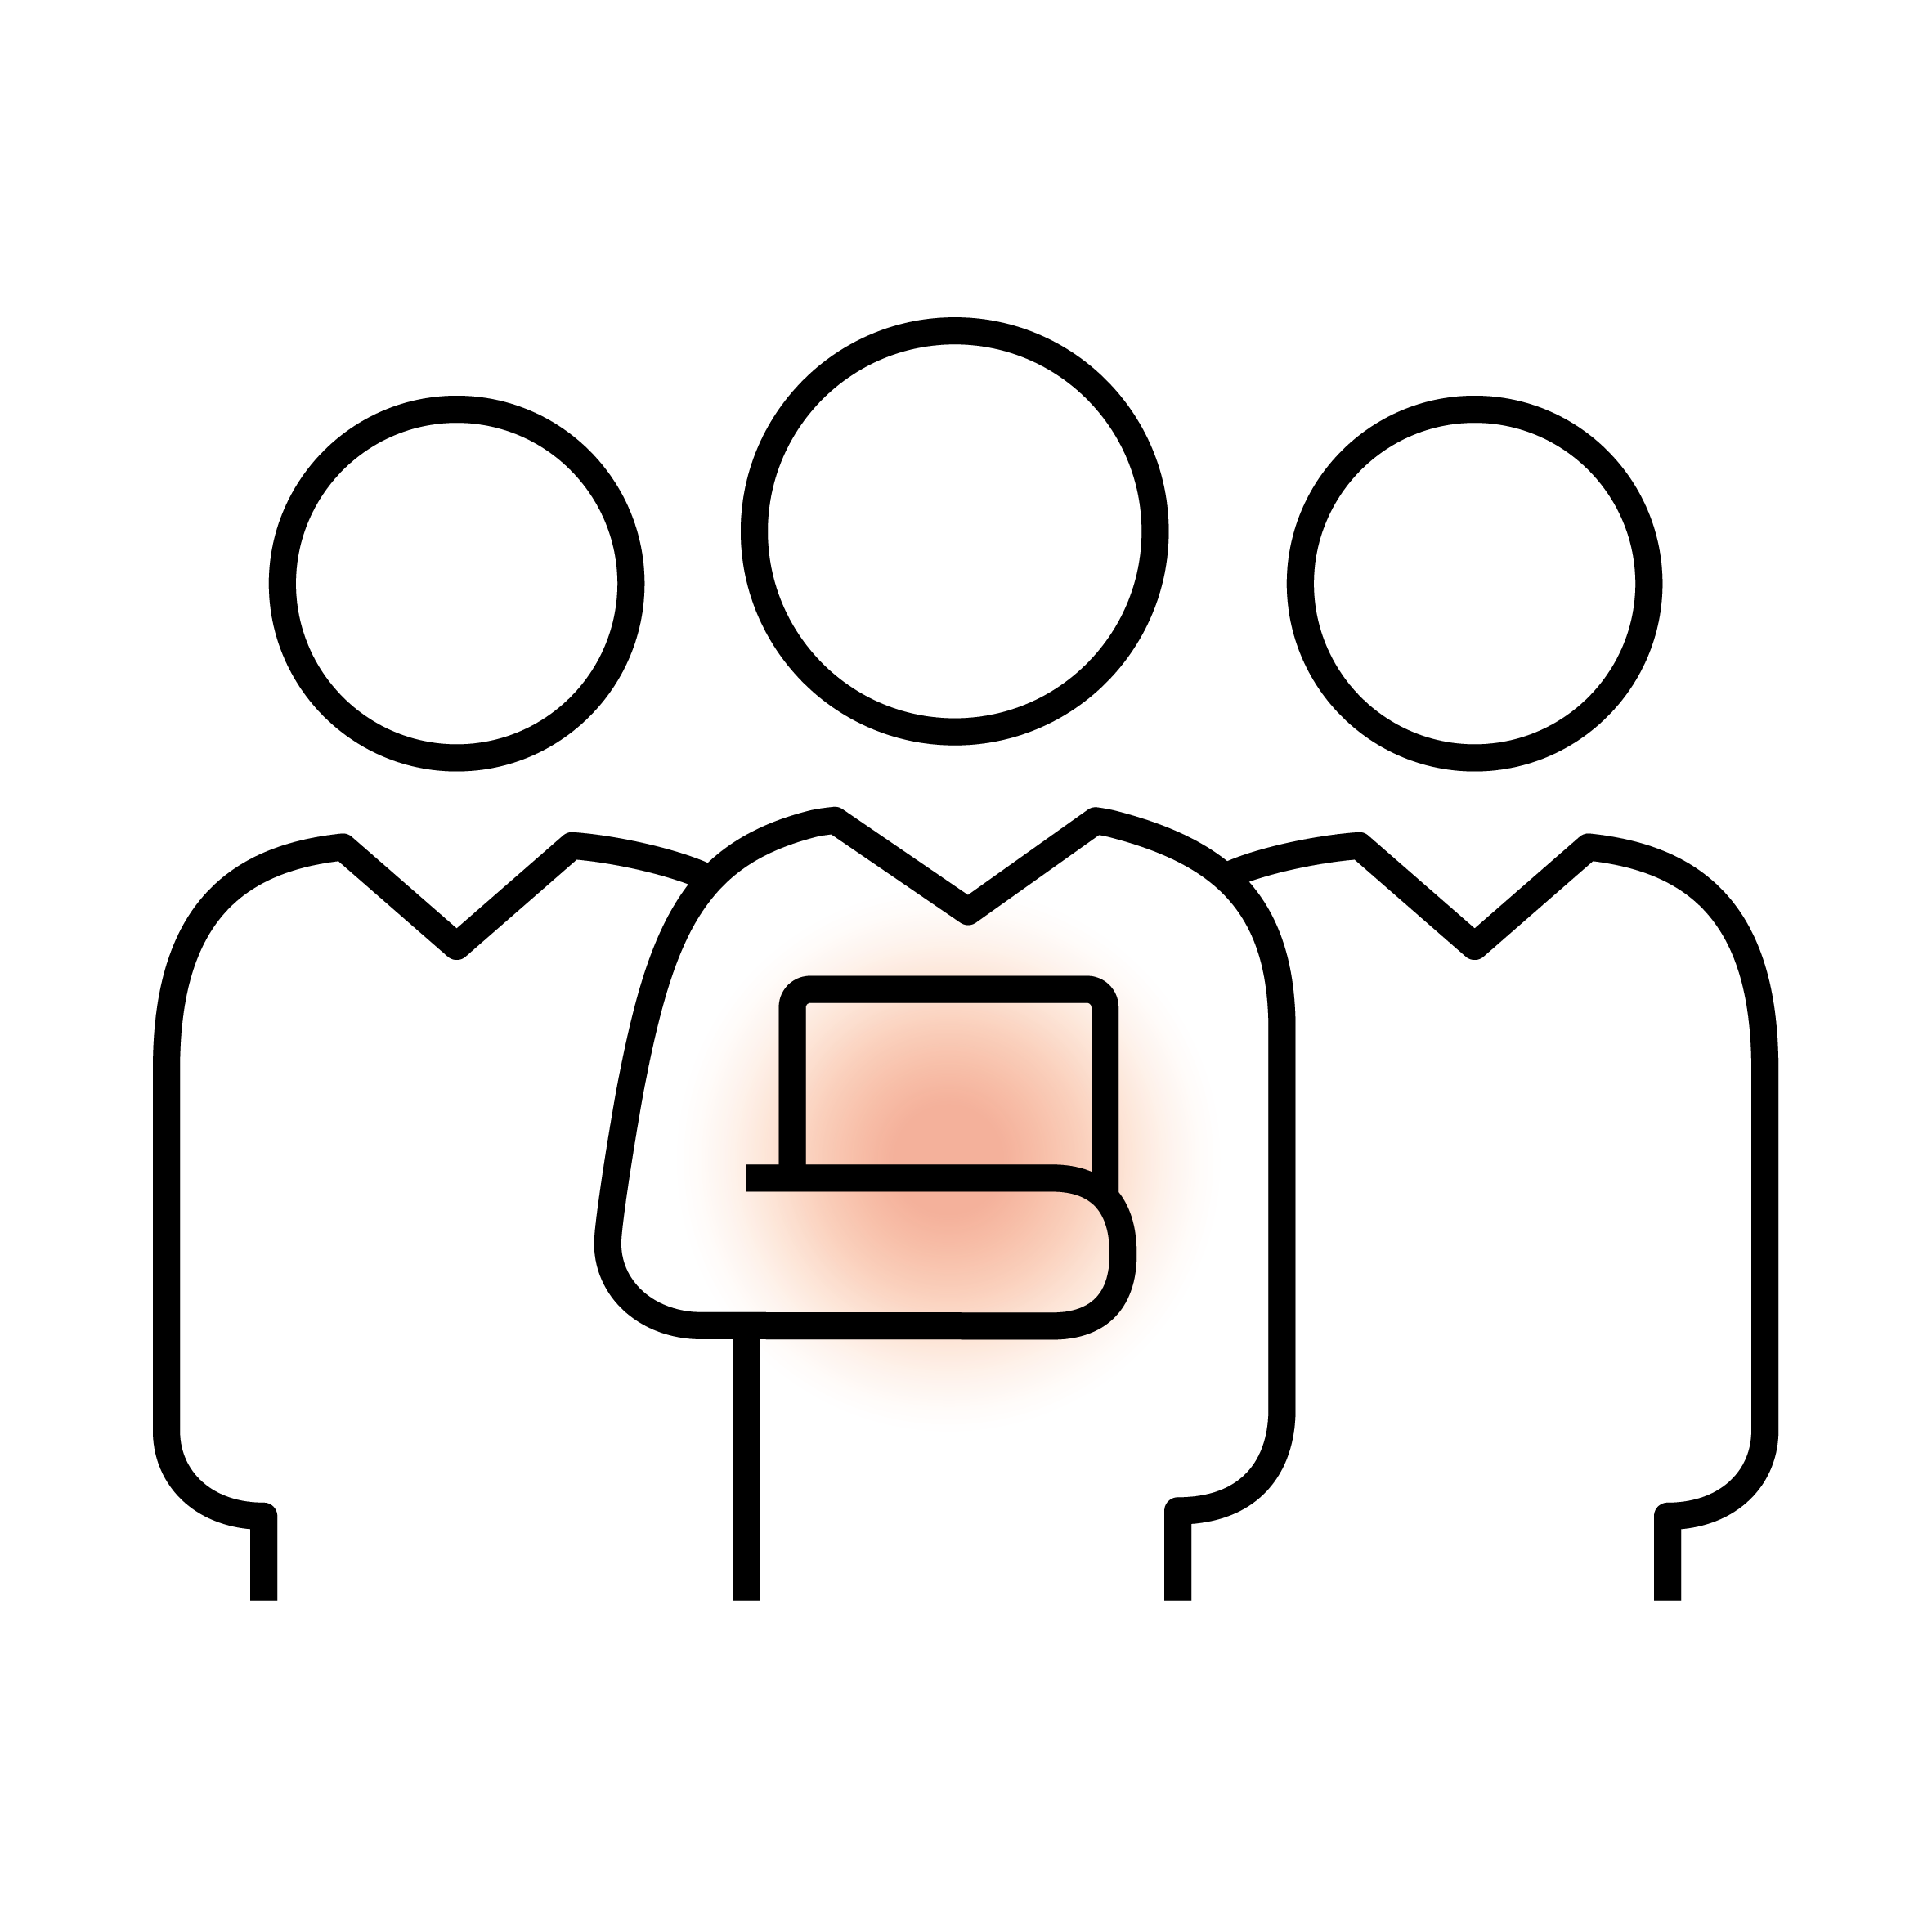 Alternativer Text: "Icon von drei stilisierten Personen mit einem ausgewählten Mitglied in der Mitte für Teamarbeit und Führung."